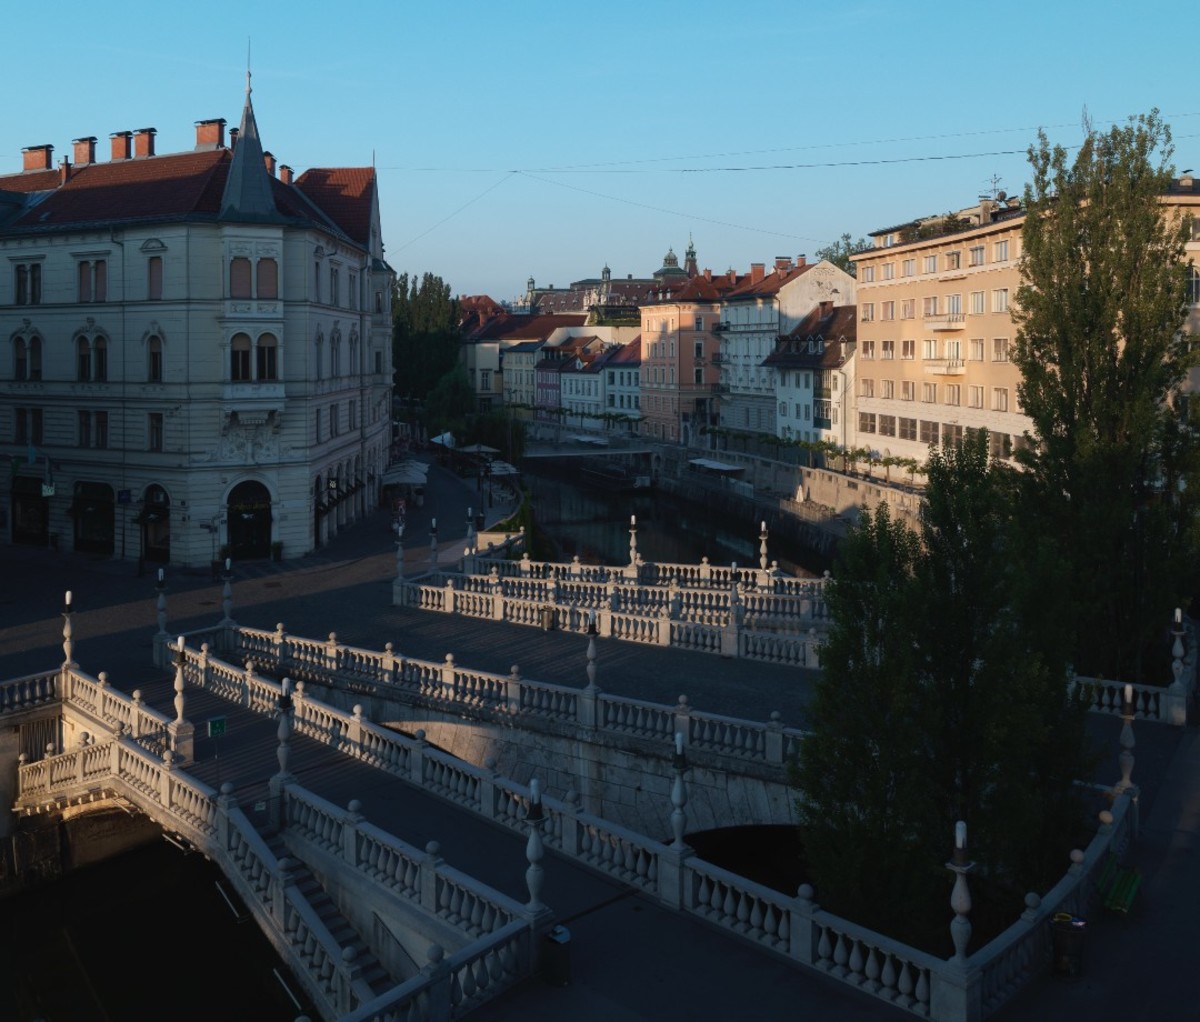 The Triple Bridge by Jože Plečnik in Ljubljana, Slovenia.